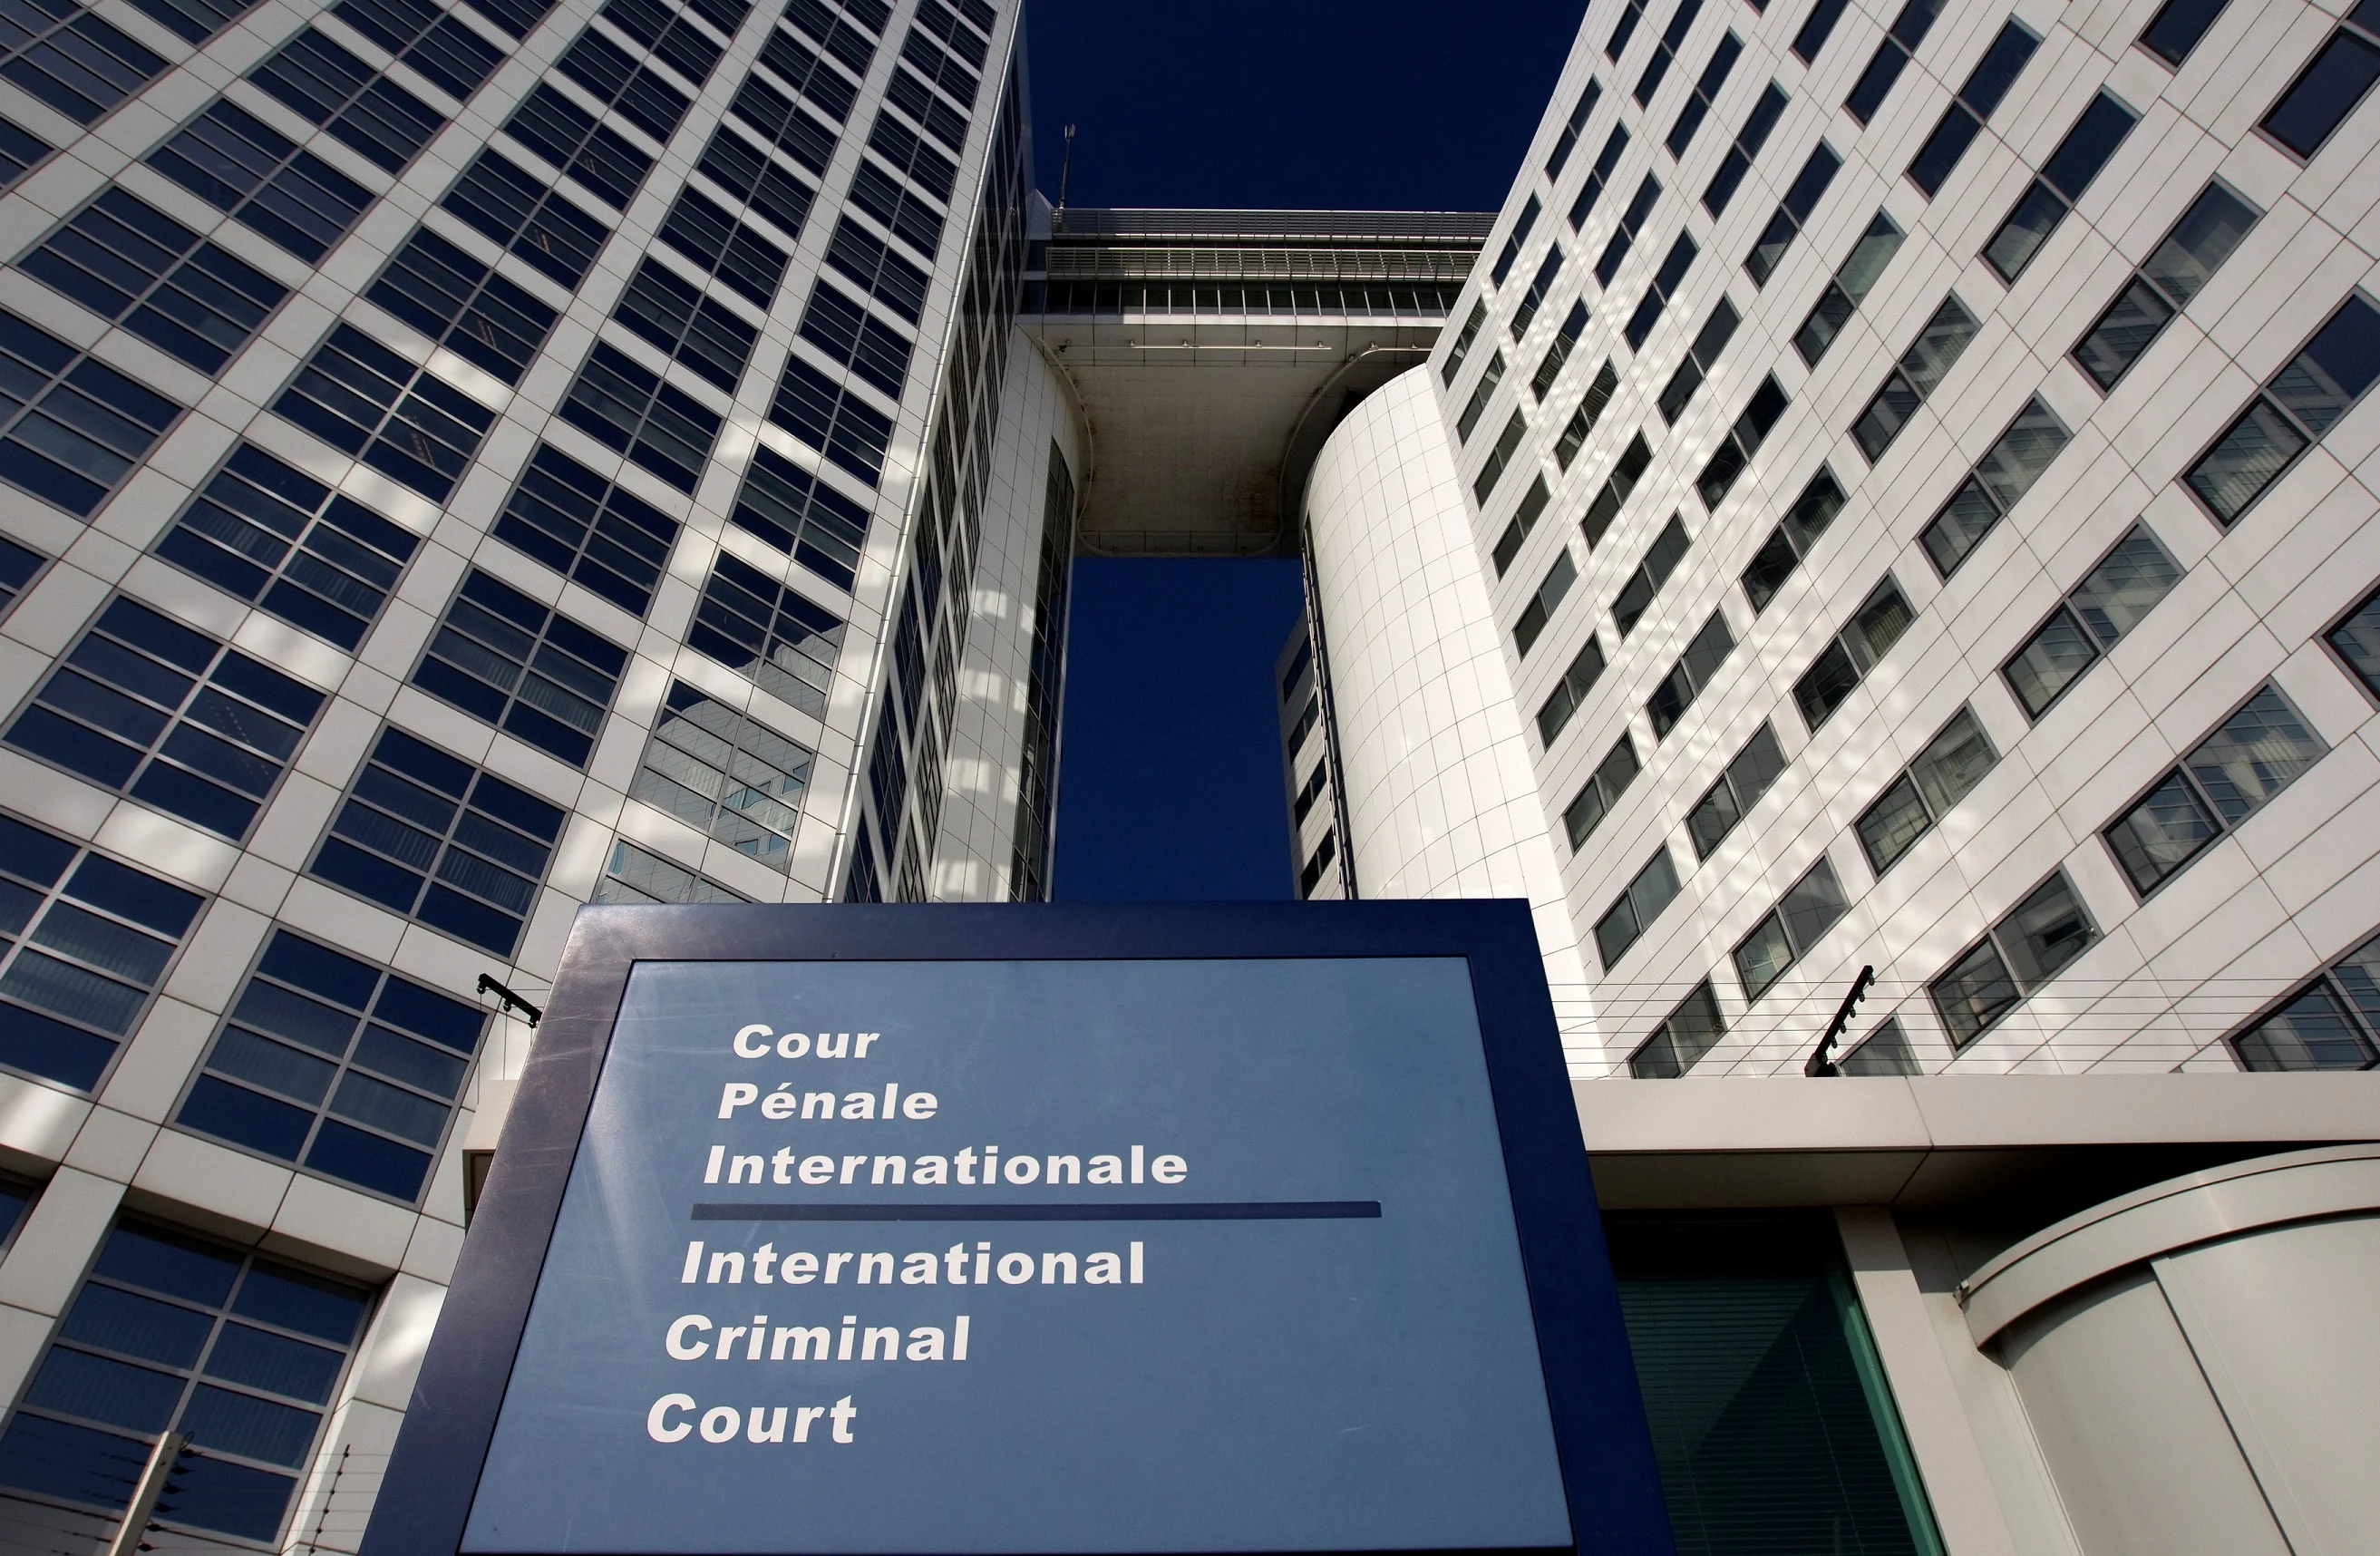 הכניסה לבית הדין הפלילי הבין-לאומי בהאג